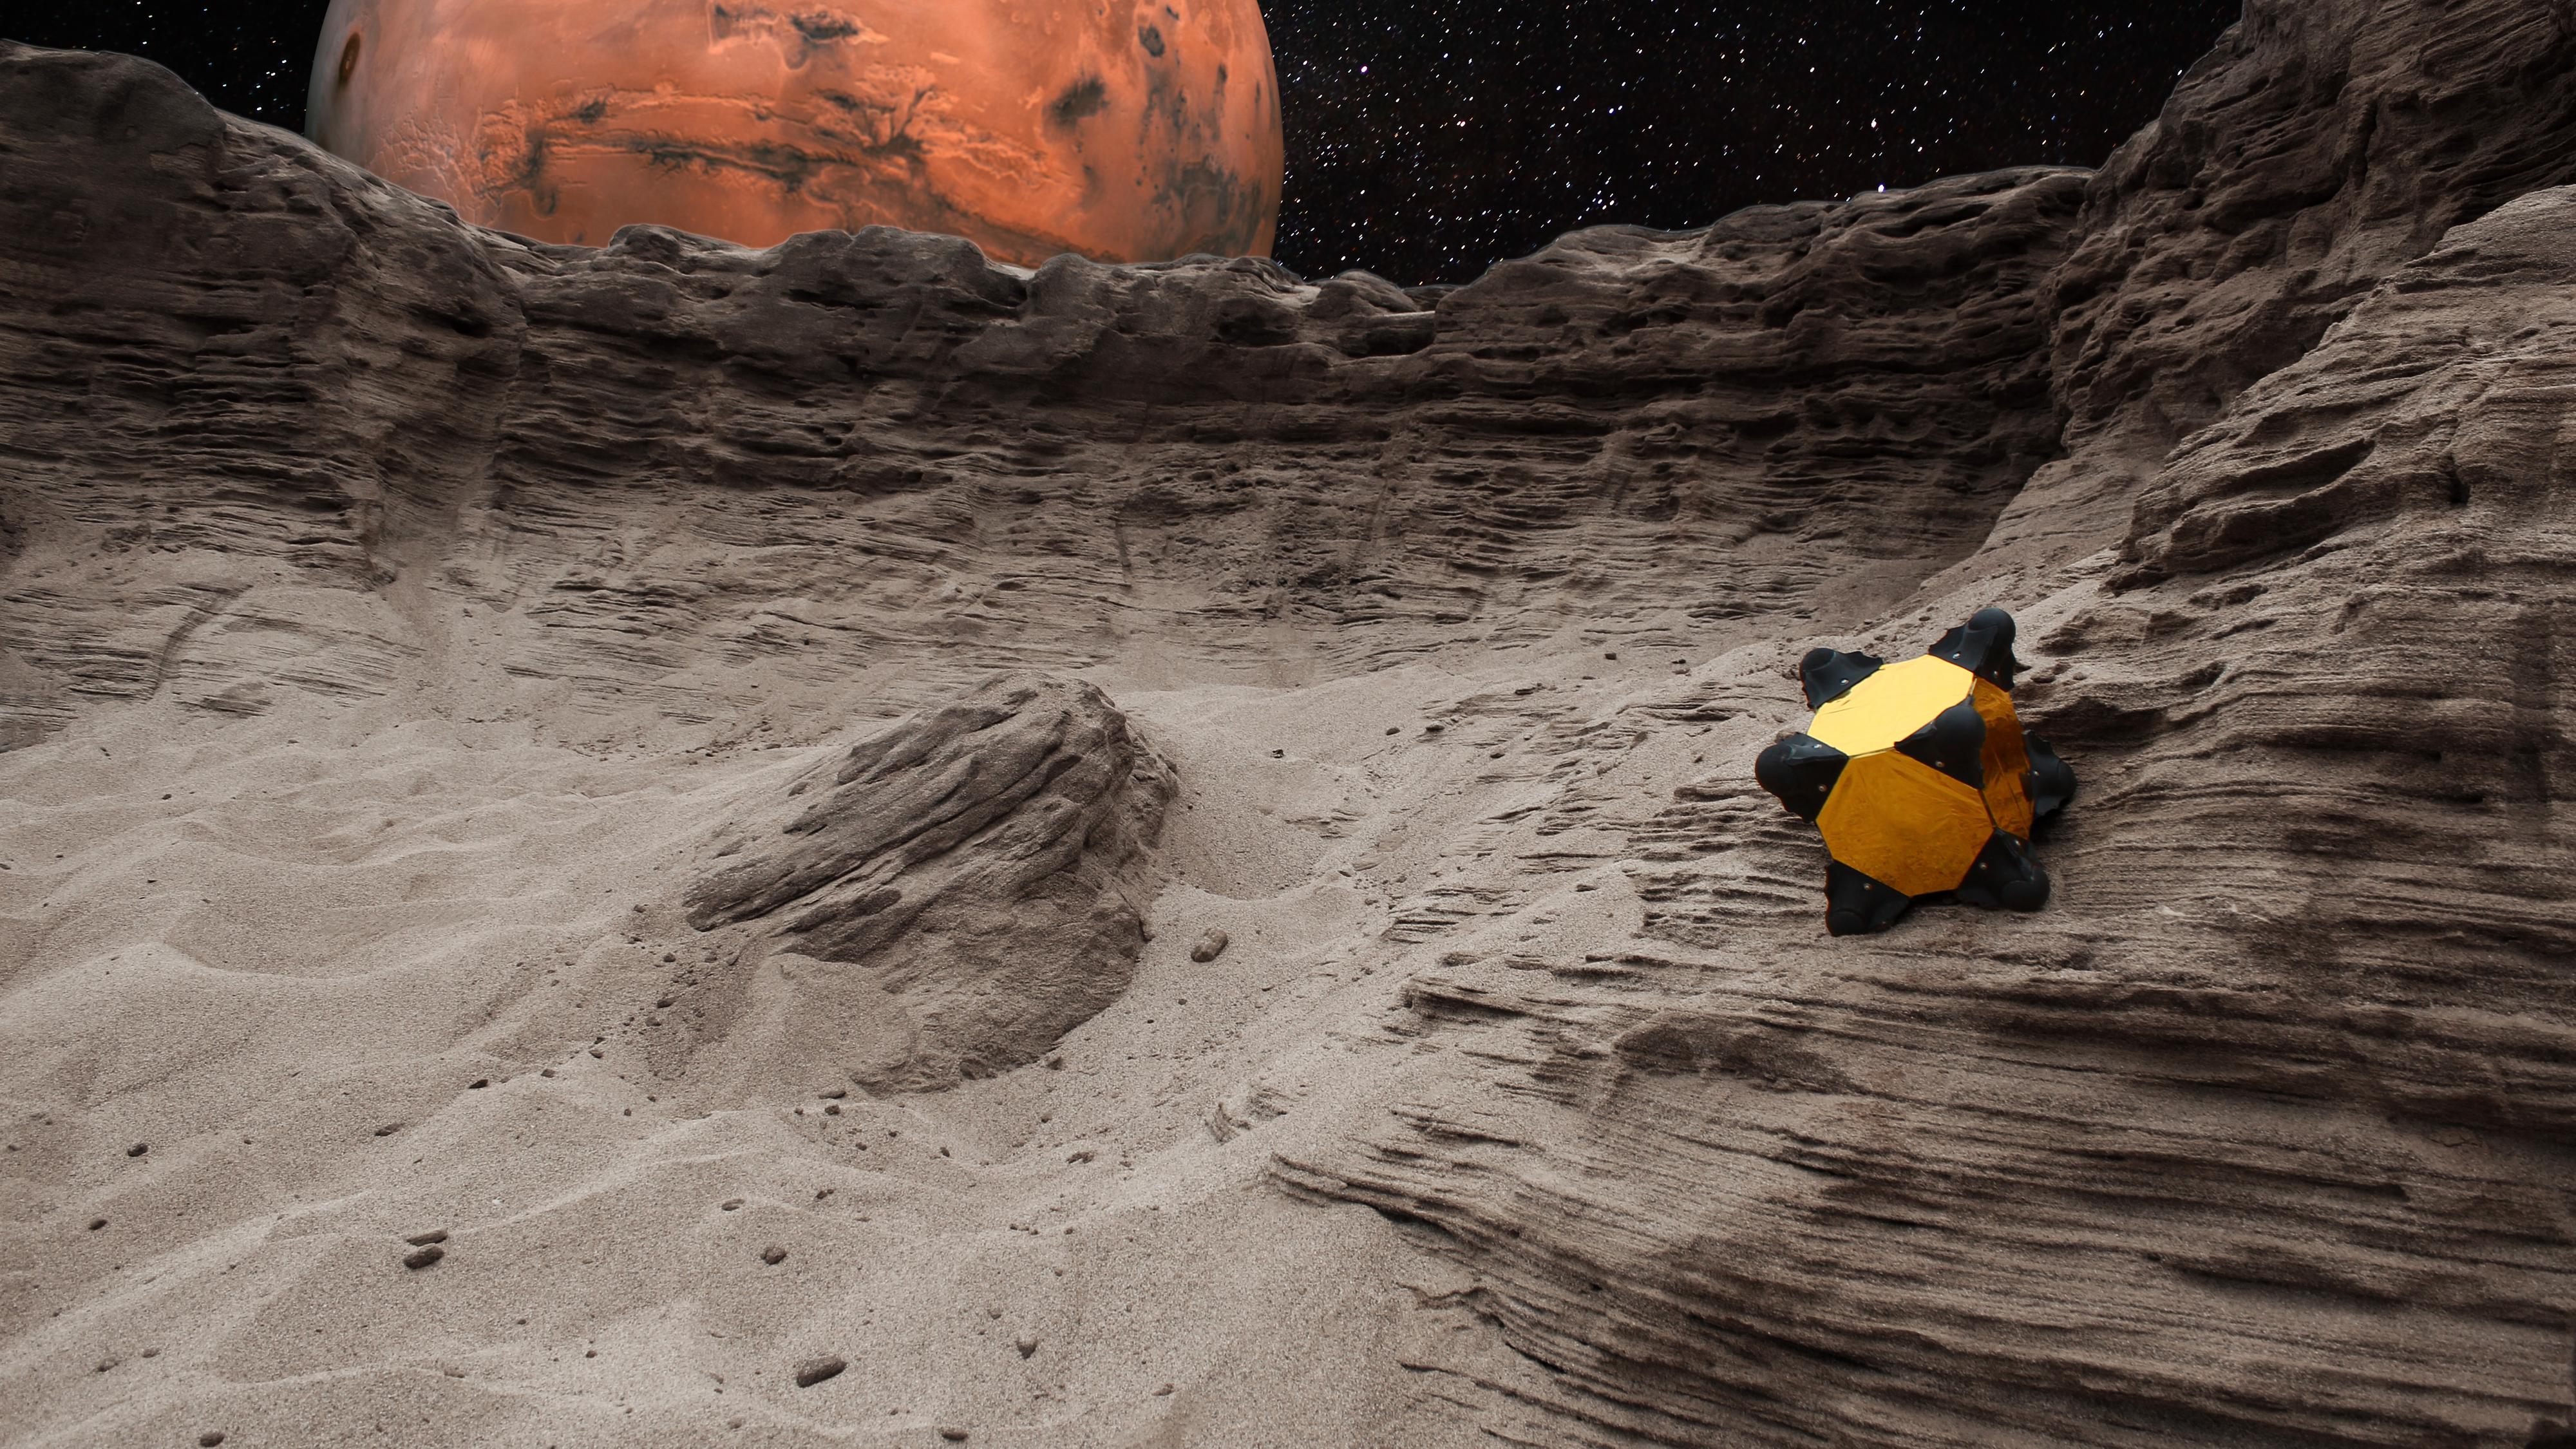 Denne lille roboten skal utforske asteroider